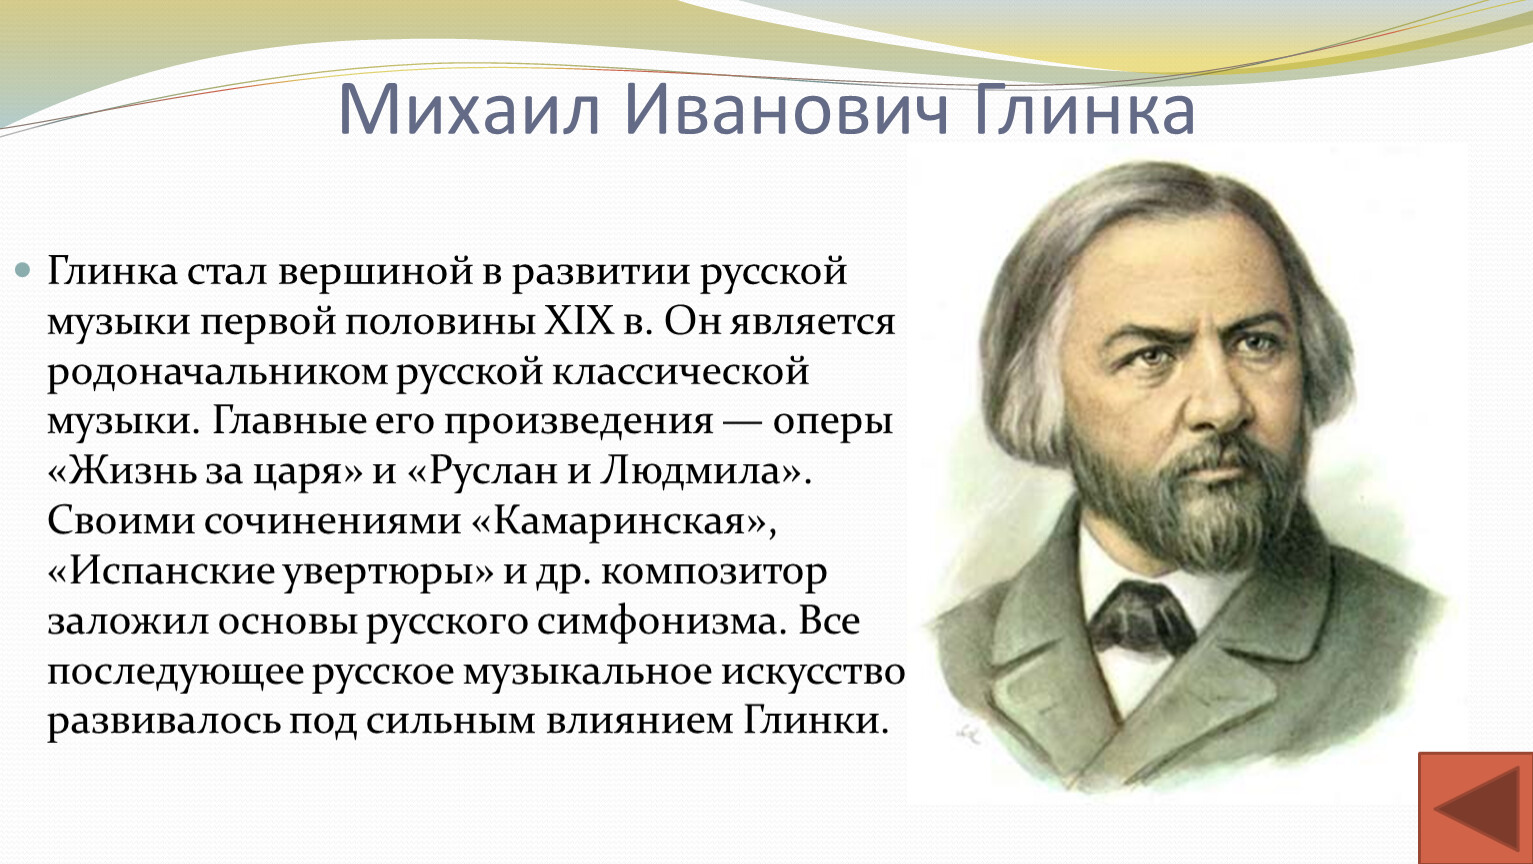 Глинка Михаил Иванович музыкального искусства 19 века